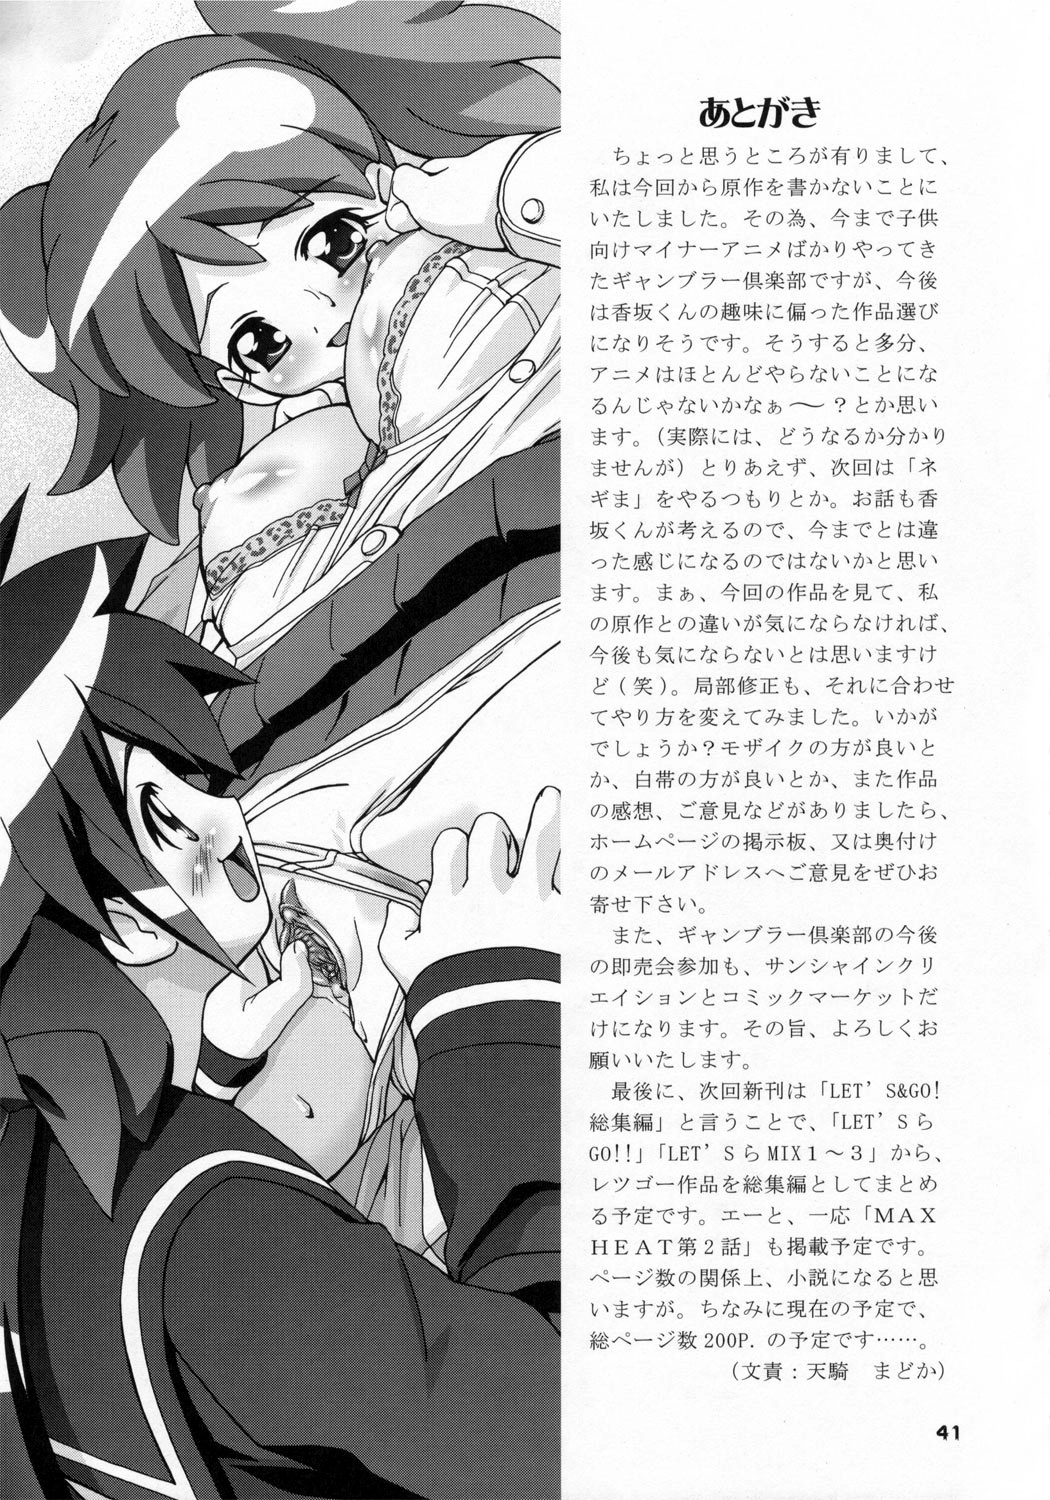 (SC31) [Gambler Club (Kousaka Jun)] Natsu Yuki - Summer Snow (Keroro Gunsou) page 40 full